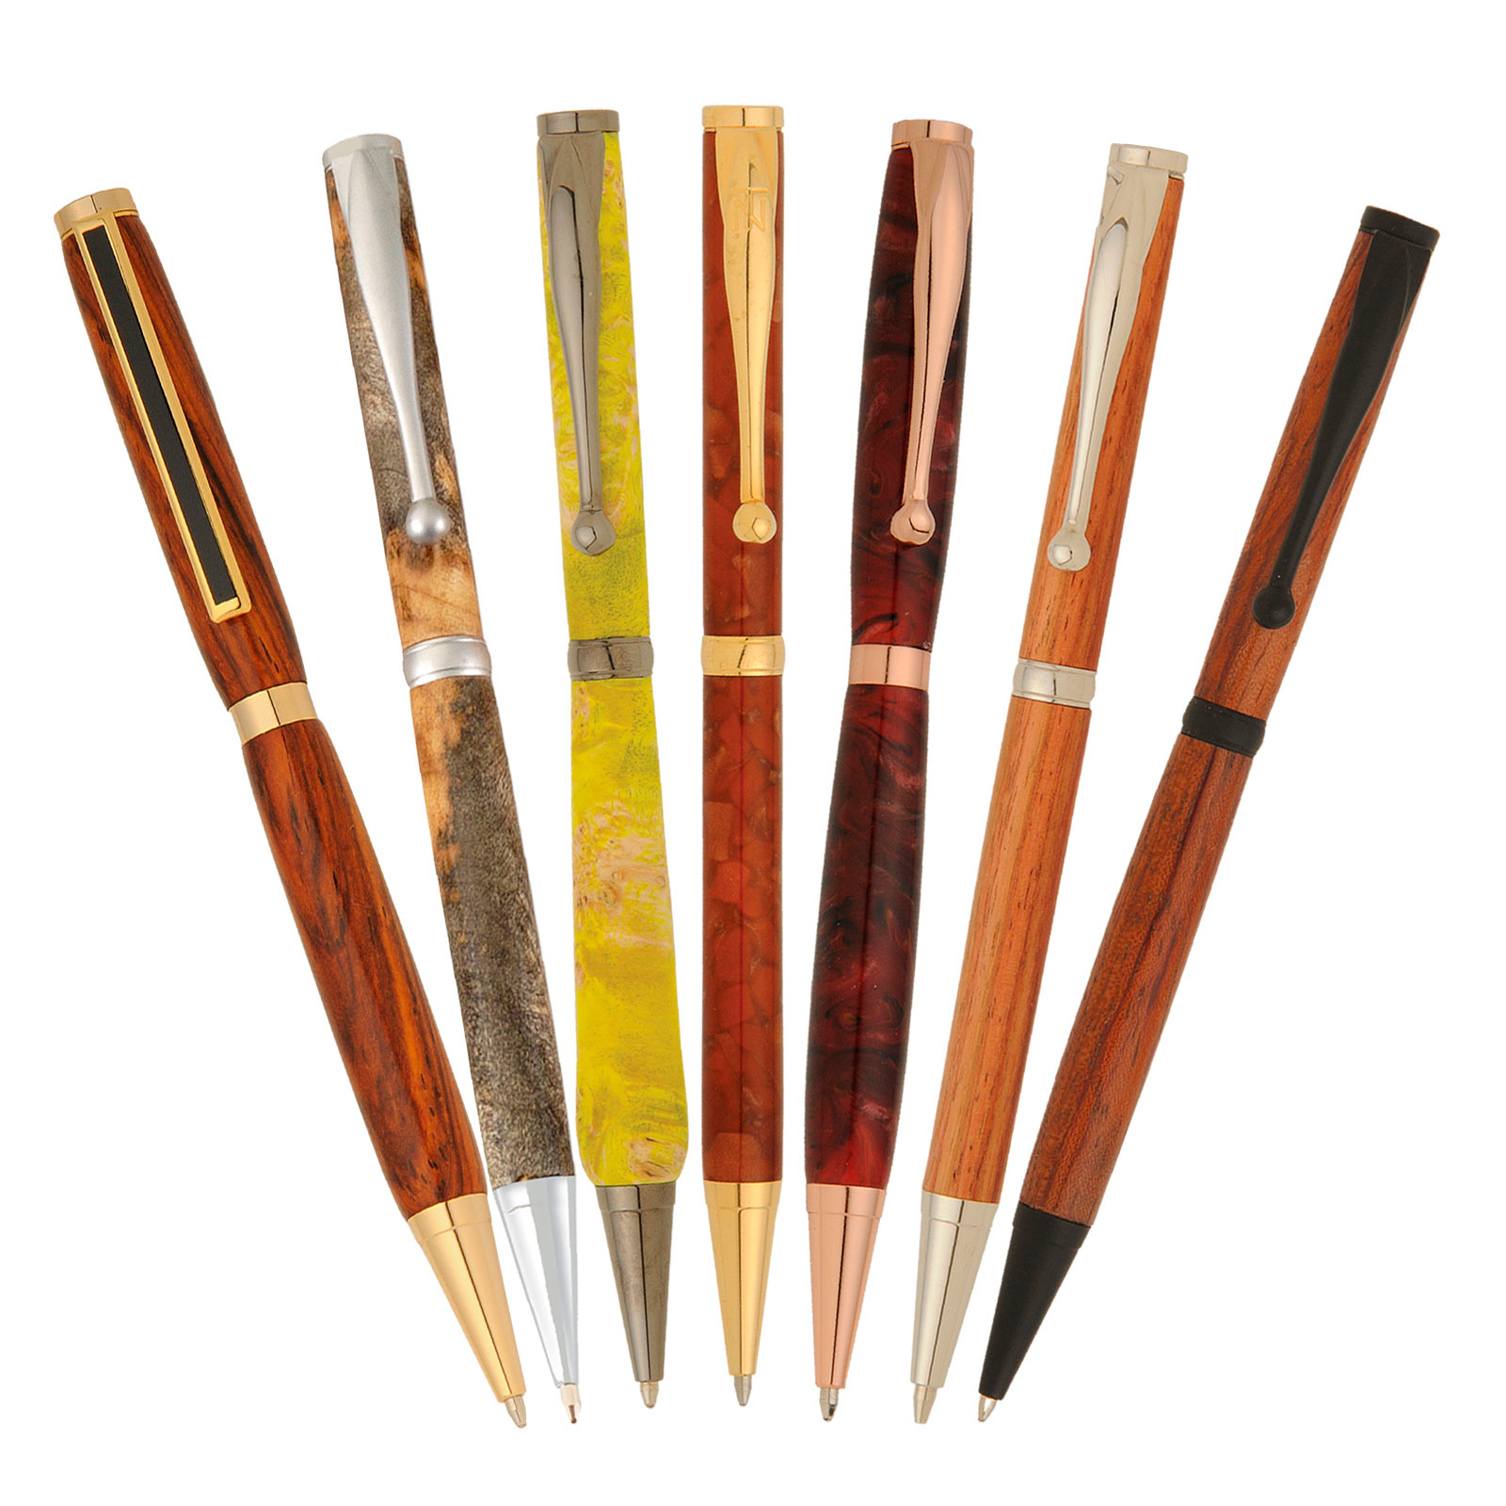 14 Slimline Pen Kit Variety Pack at Penn State Industries